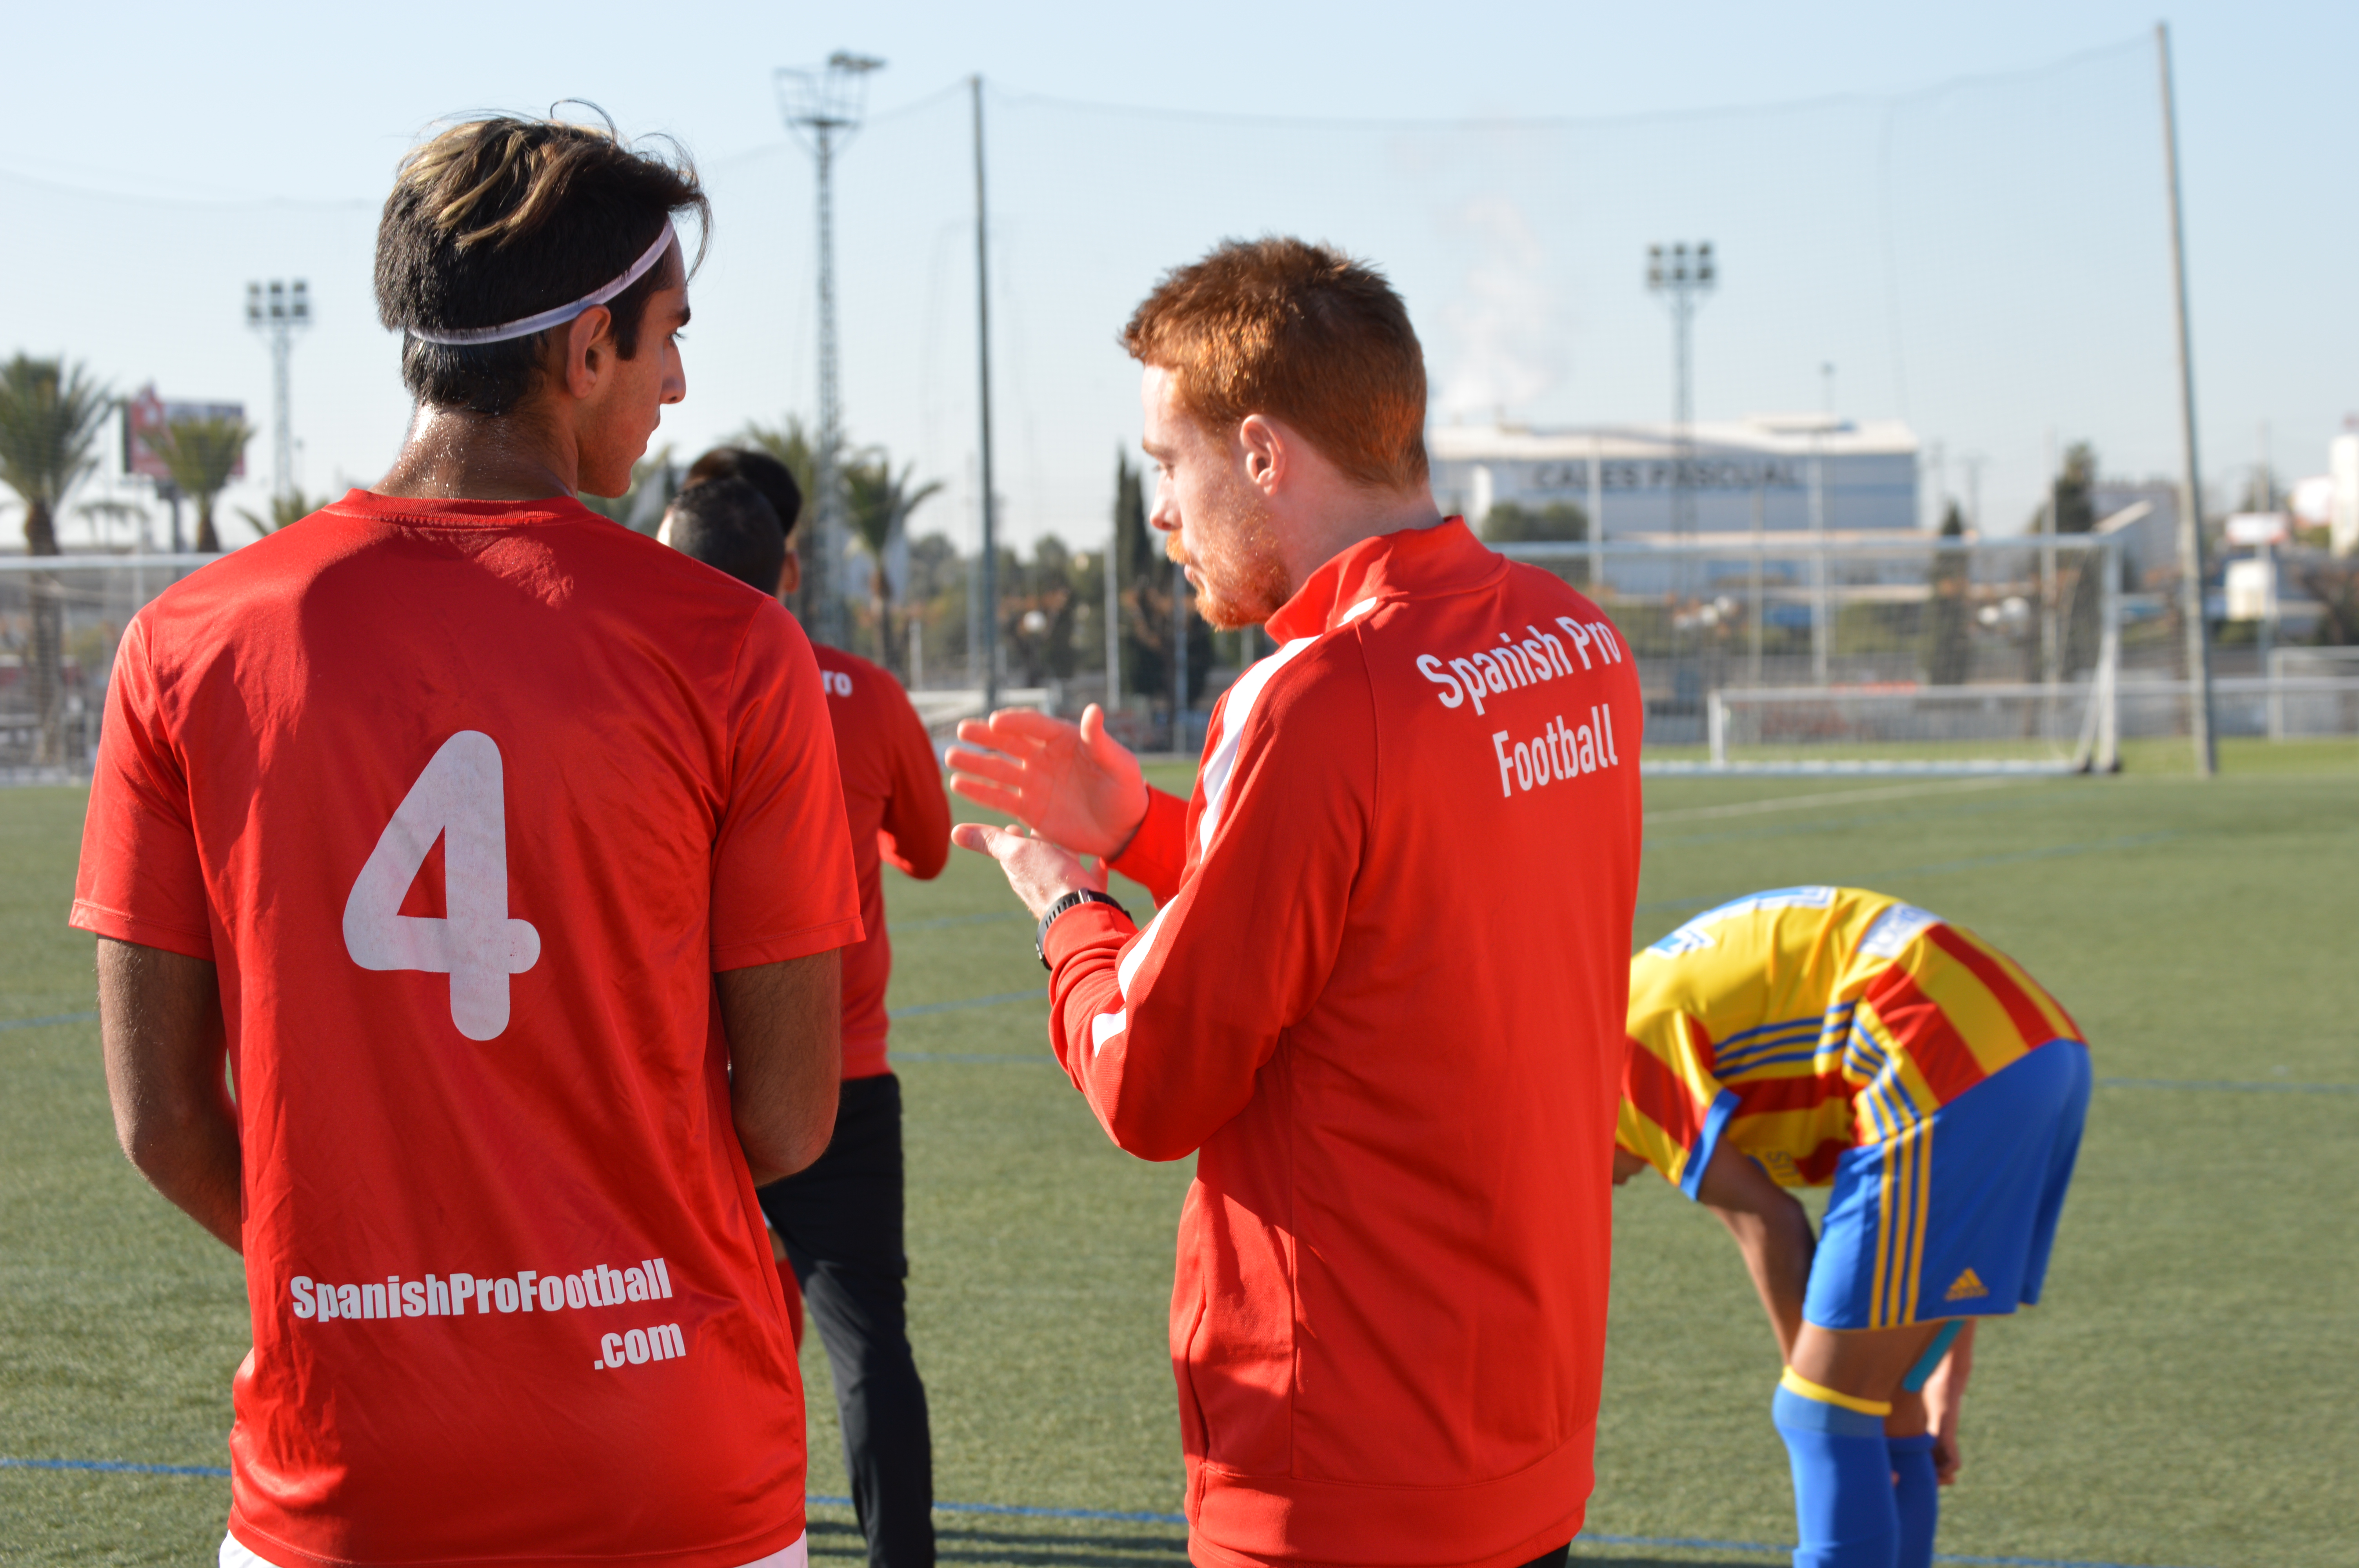 SPF Academy - це інтернаціональна академія футболу в Валенсії, яка реалізує високоефективні програми для розвитку потенціалу молодих футболістів в контексті високого професіоналізму і в прямому контакті зі світом футболу та іспанської Лігою